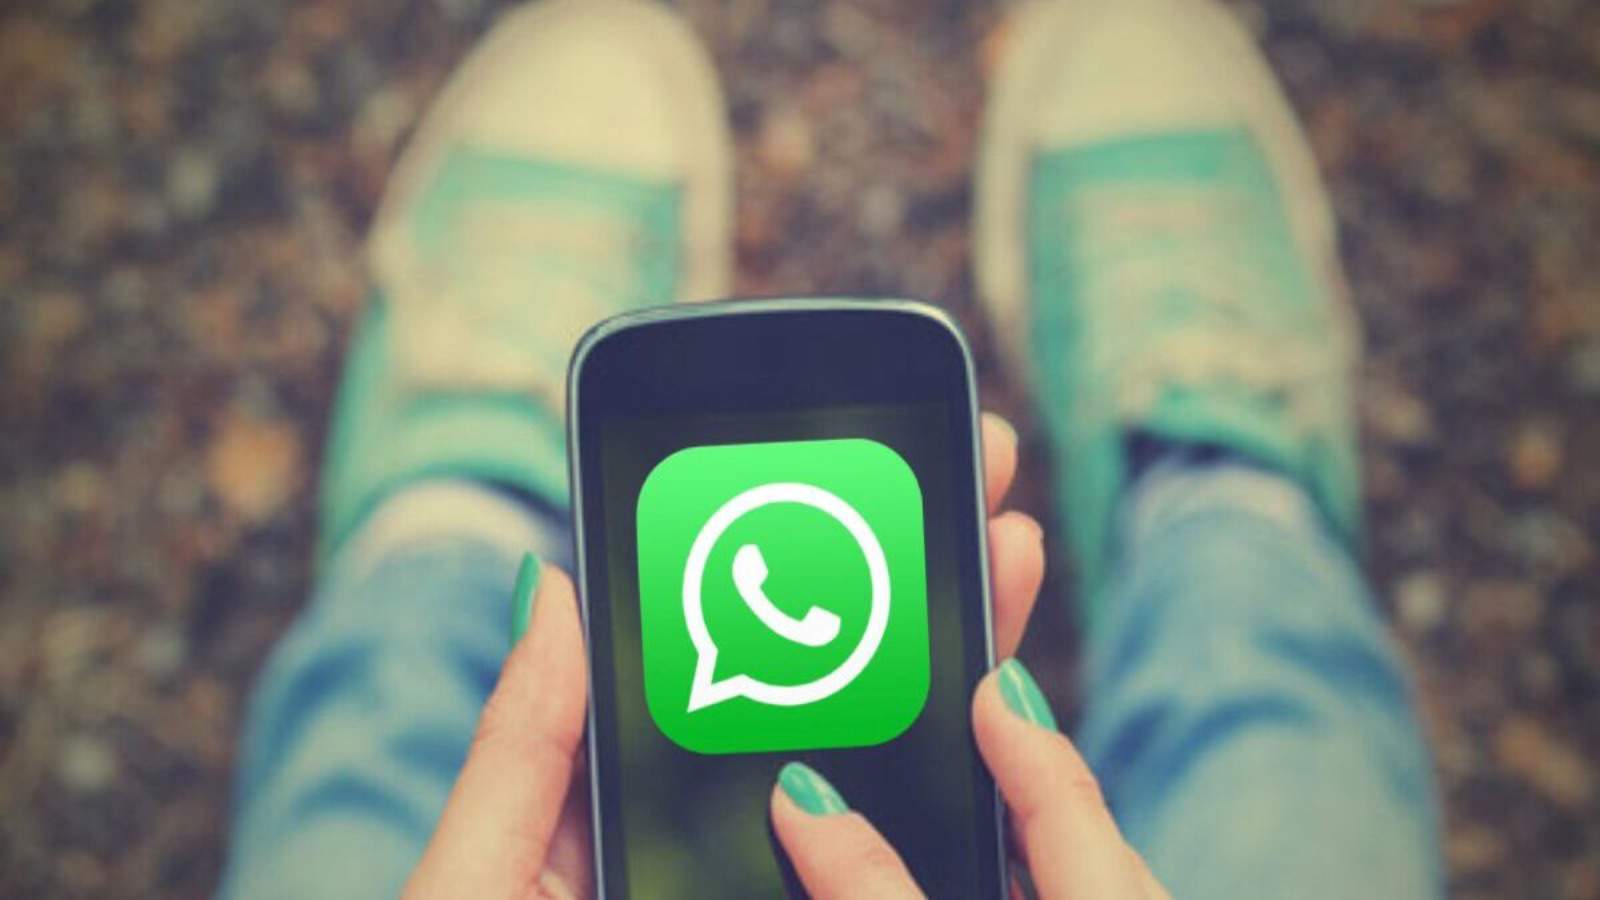 WhatsApp e le TRE funzioni rimaste segrete per anni: ecco come usarle